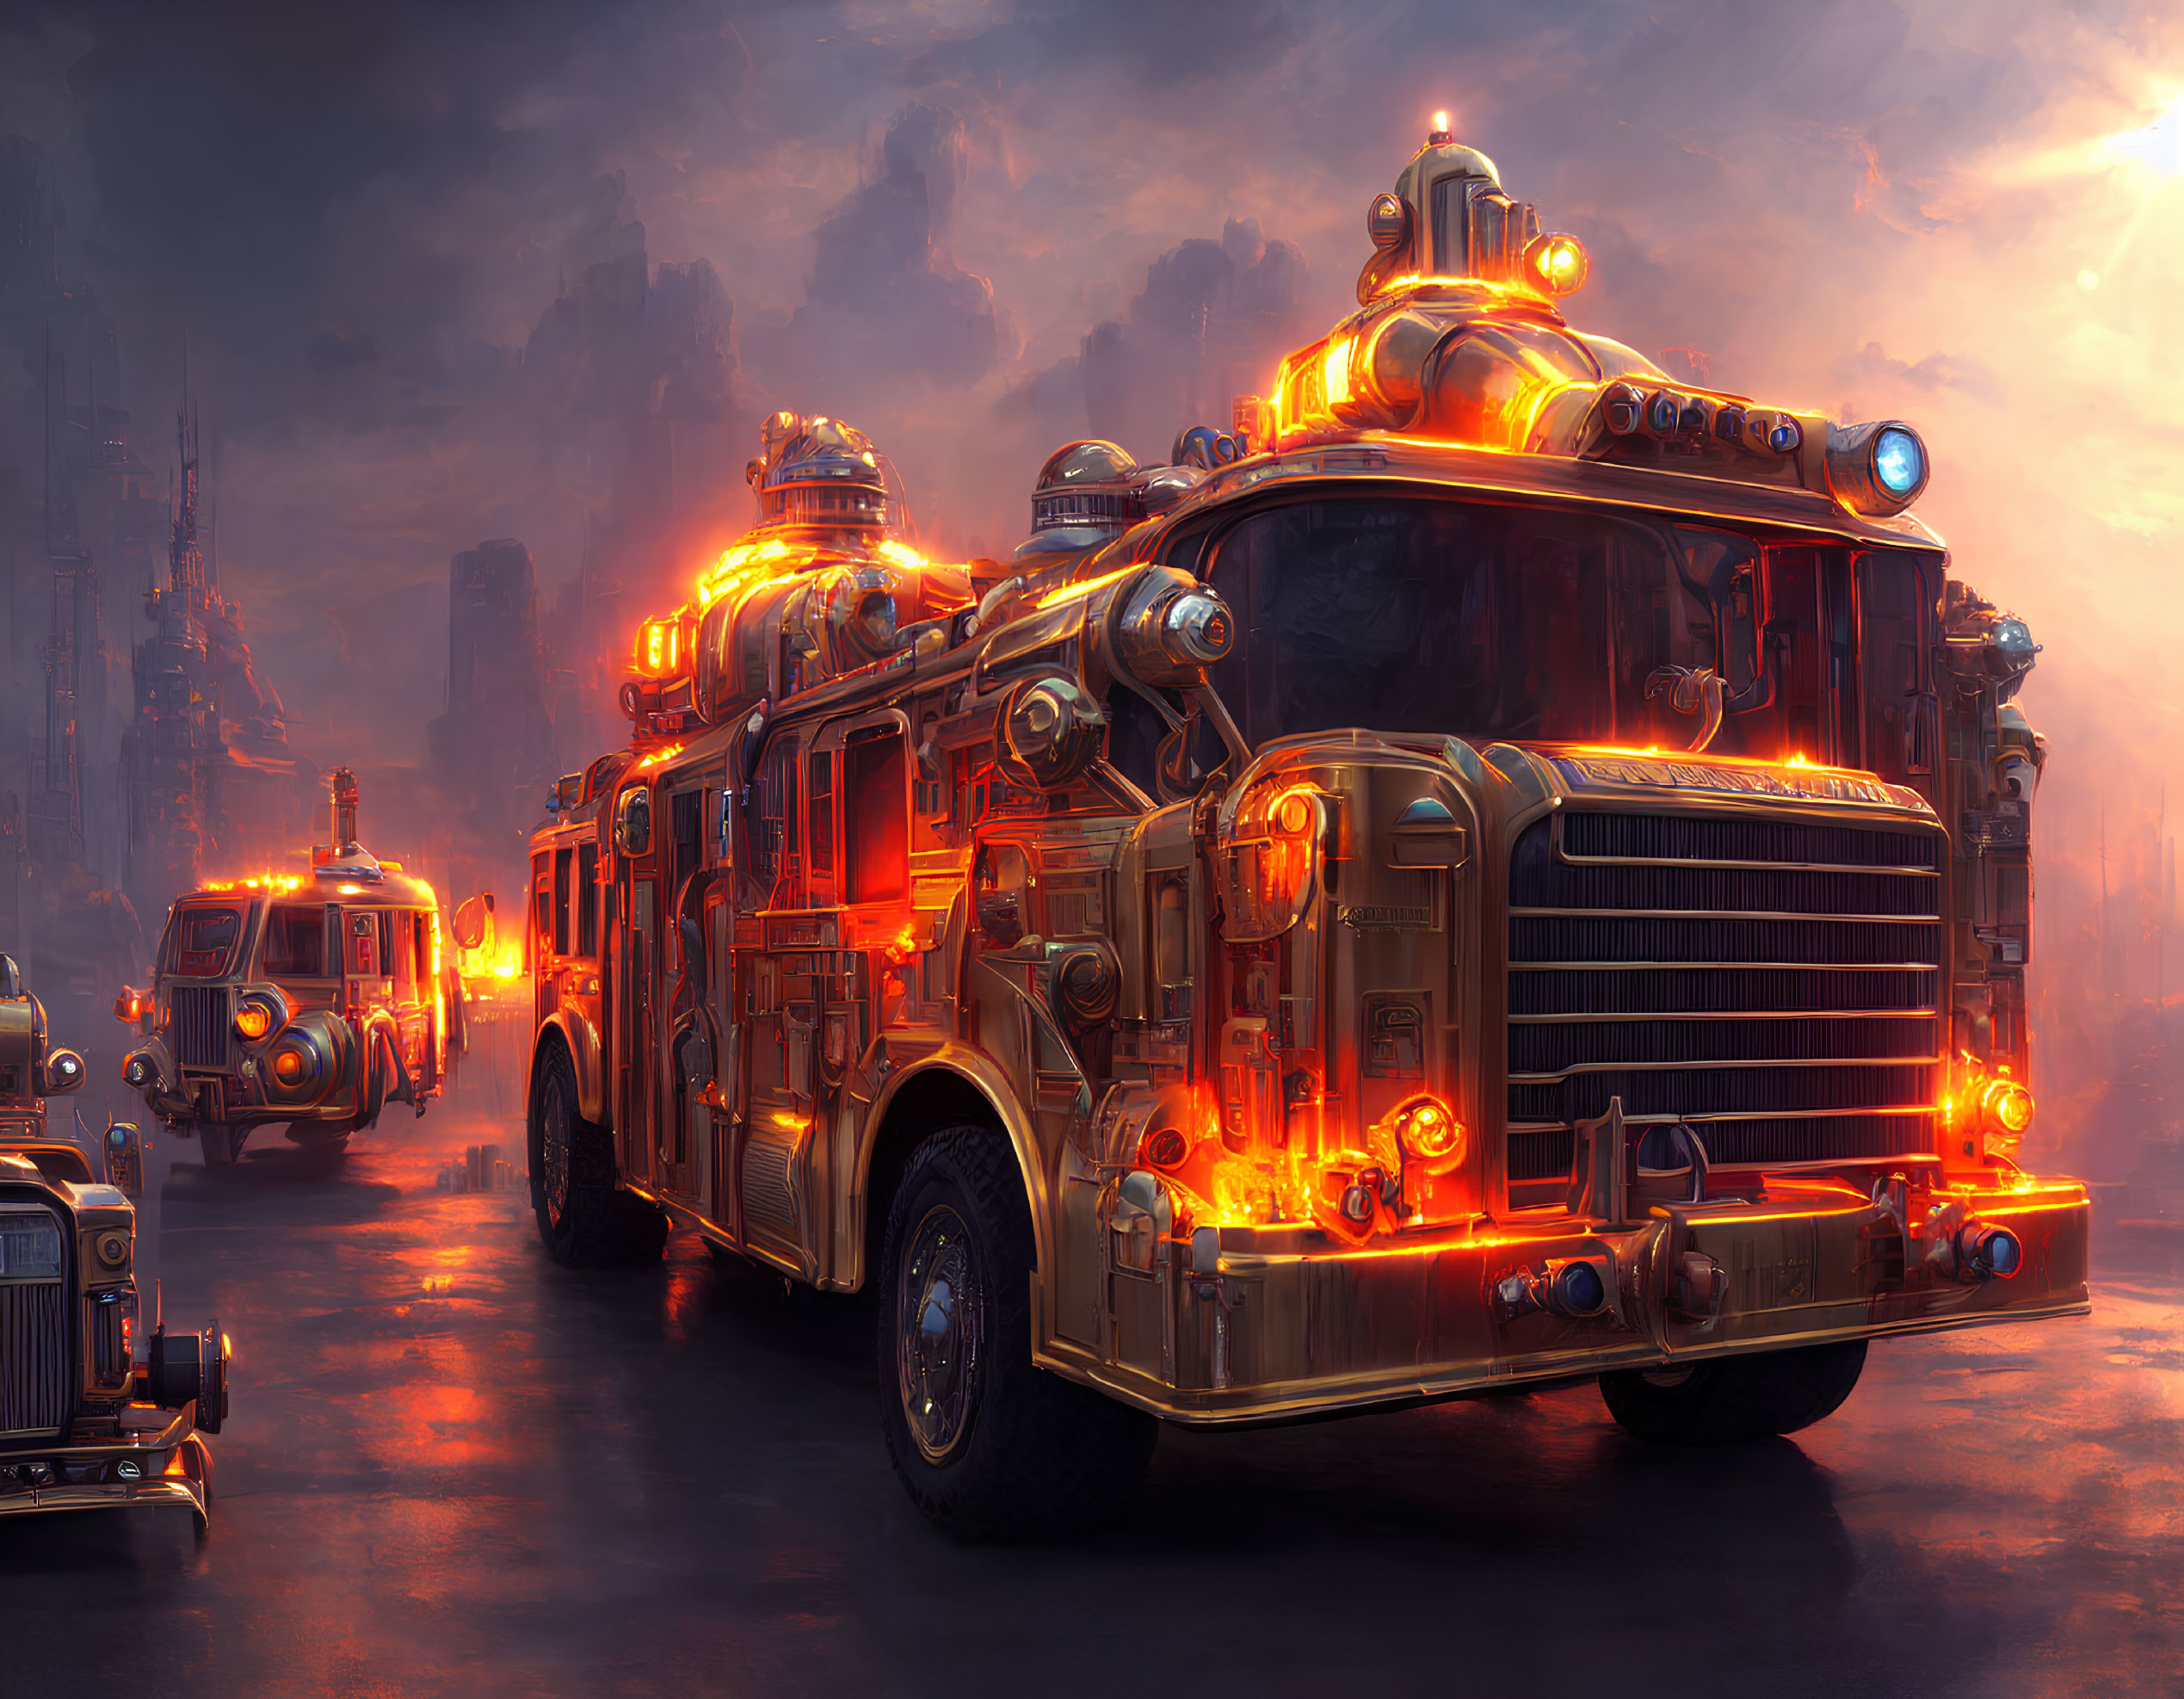 Glowing orange lights on futuristic fire trucks in misty dystopian cityscape